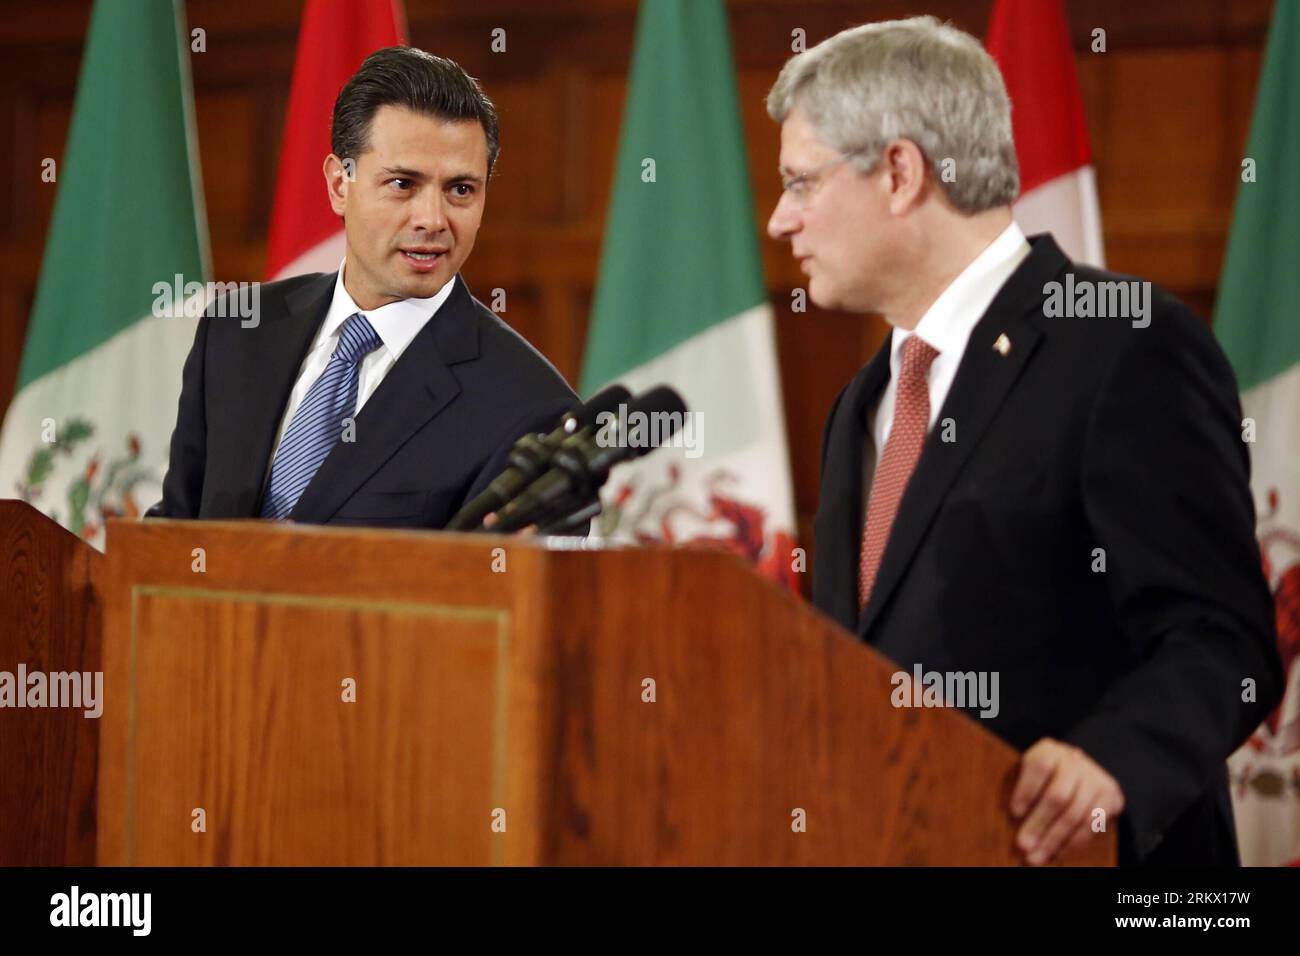 Bildnummer : 58854253 référence : 29.11.2012 Copyright : imago/Xinhua (121129) -- OTTAWA, le 29 novembre 2012 (Xinhua) -- le président élu du Mexique, Enrique Pena Nieto (à droite), rencontre le premier ministre canadien Stephen Harper à Ottawa, le 28 novembre 2012. (Xinhua/David Kawai) CANADA-MEXIQUE-ENRIQUE PENA NIETO-VISIT PUBLICATIONxNOTxINxCHN personnes Politik xns x0x 2012 quer 58854253 Date 29 11 2012 Copyright Imago XINHUA Ottawa nov 29 2012 le président MEXICAIN élu de XINHUA Enrique Pena Nieto r rencontre les premiers ministres canadiens Stephen Harper à Ottawa LE 28 2012 novembre à Ottawa Canada XINHUA David Banque D'Images